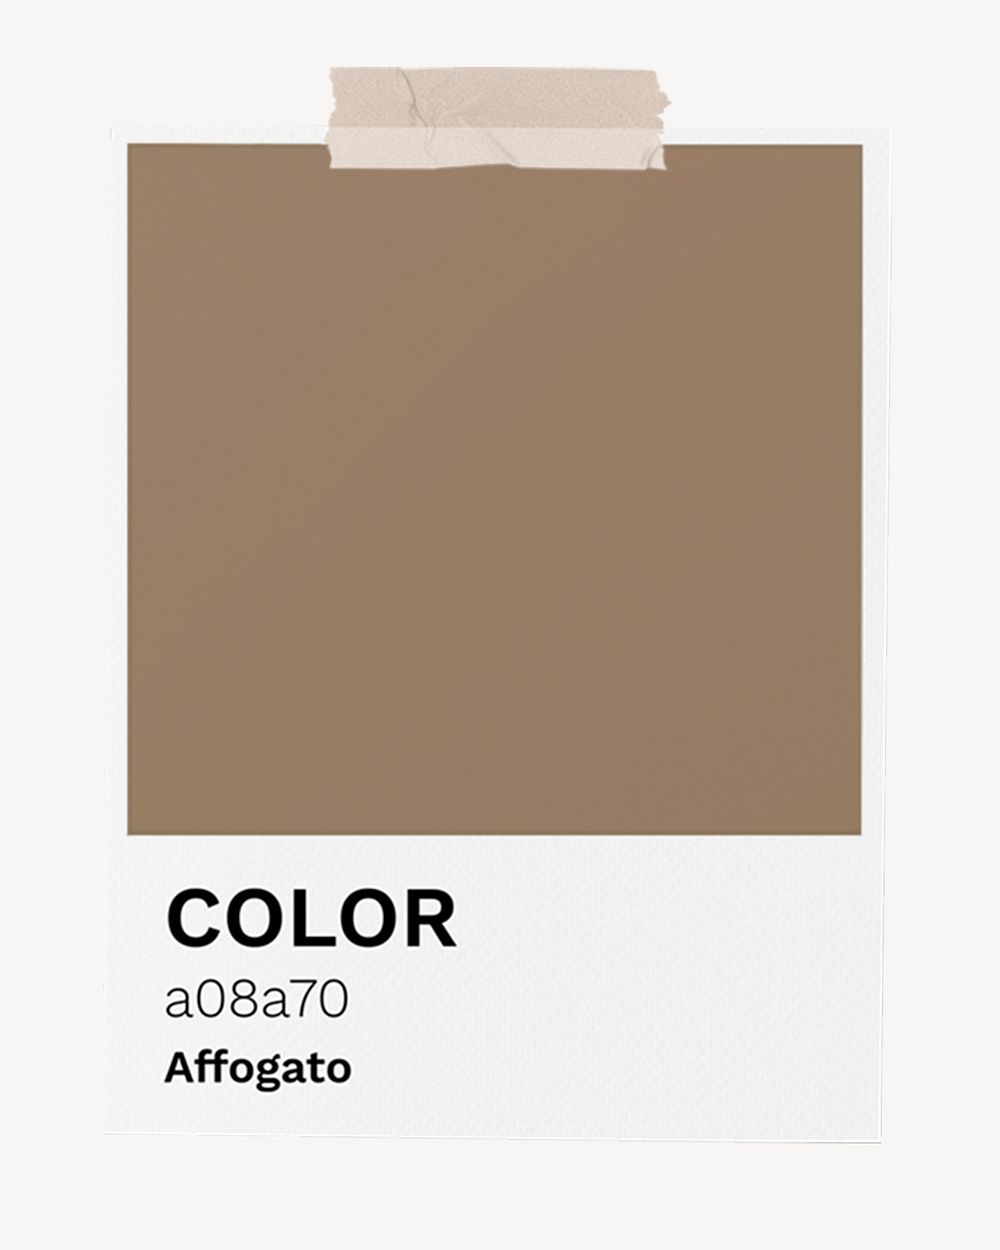 Affogato brown color sample card